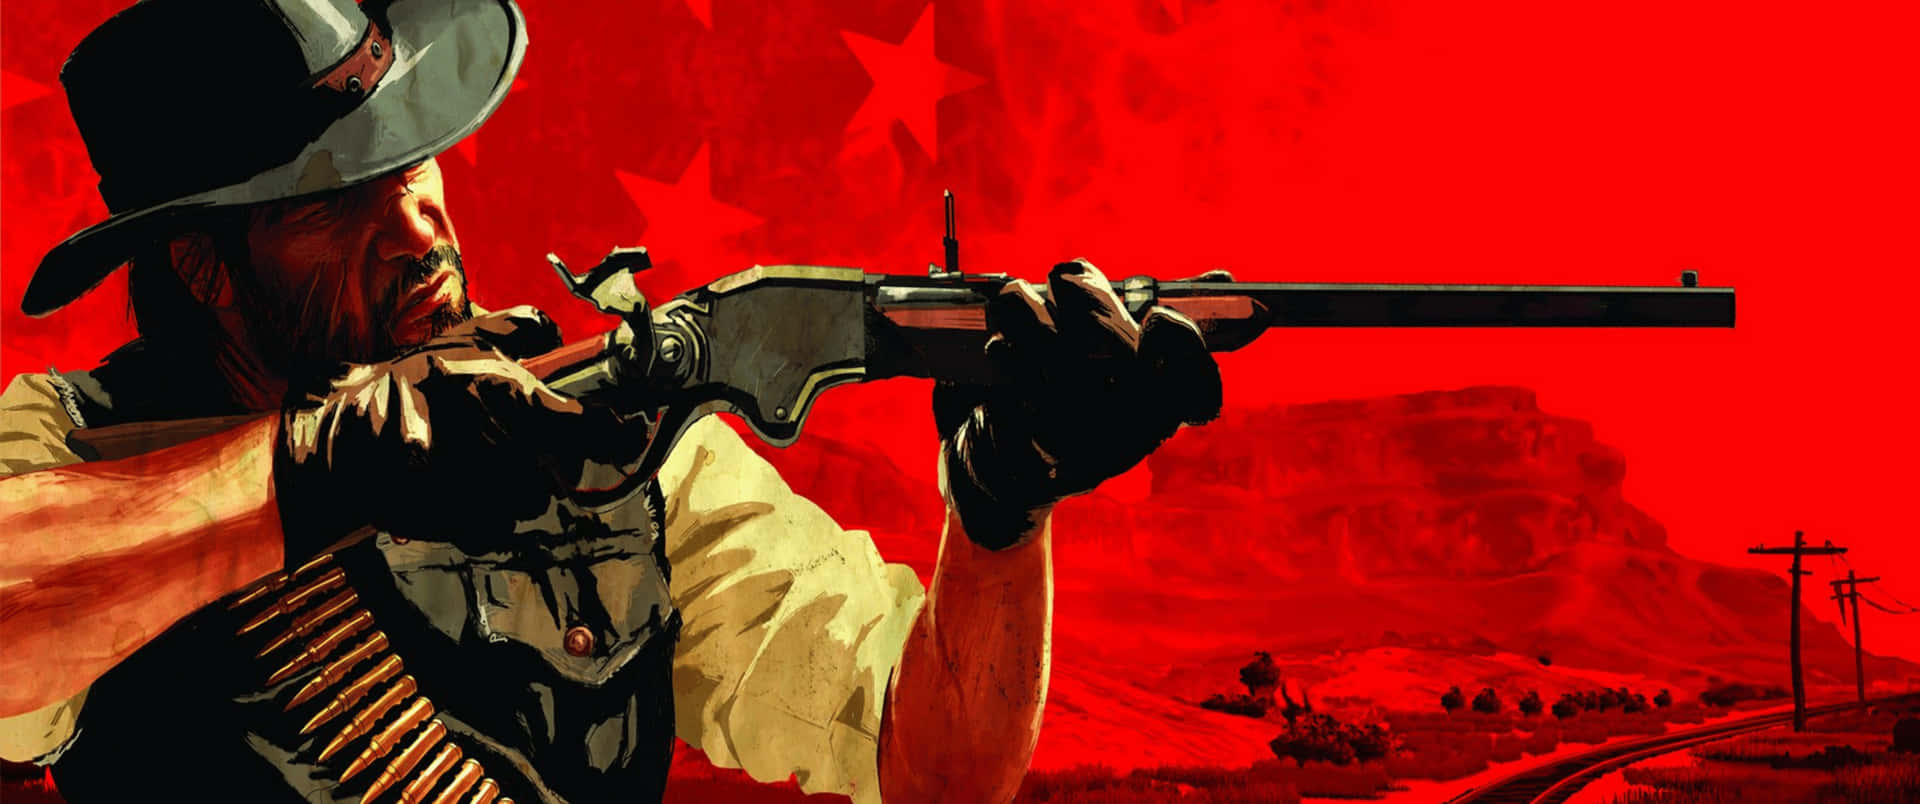 Sfondodi Red Dead Redemption 2 Con Fucile, In Risoluzione 3440x1440p.